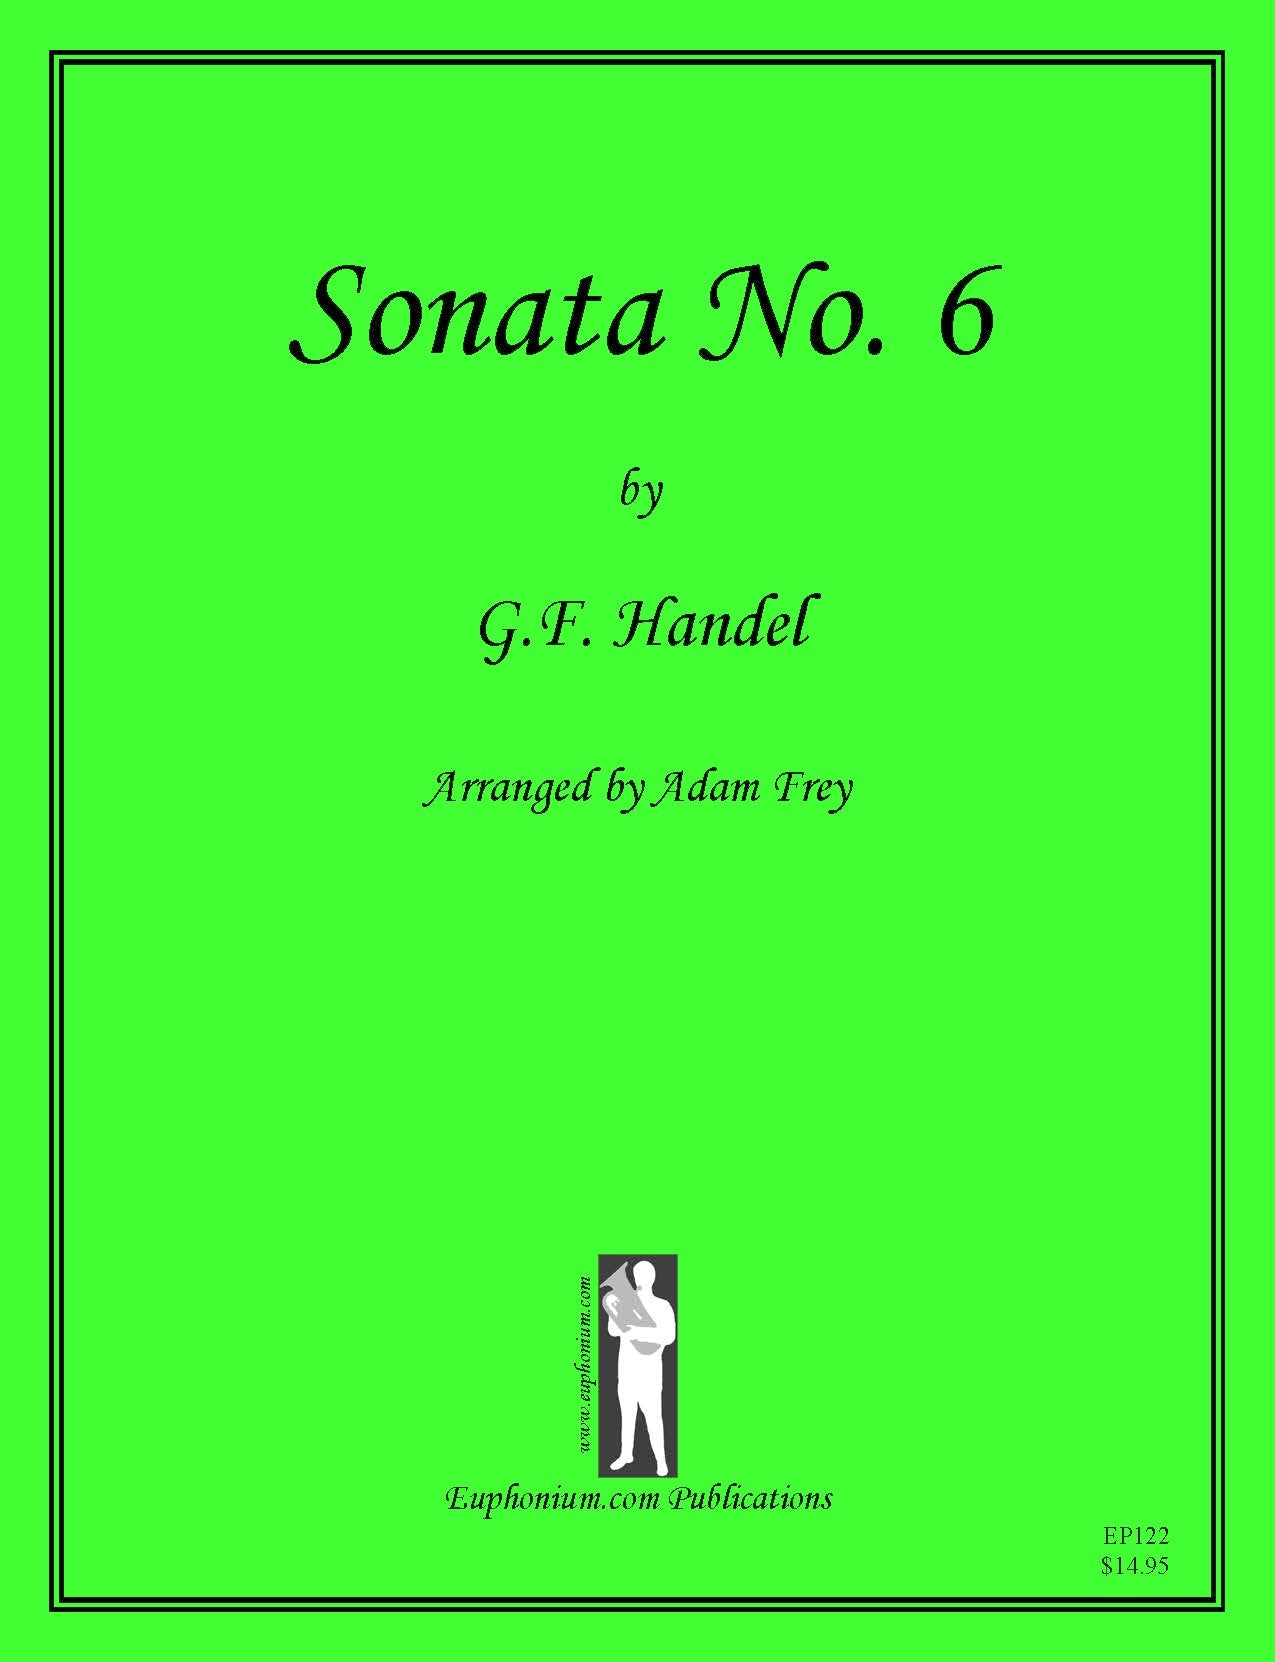 Handel arr. Frey - Sonata No. 6 DOWNLOAD